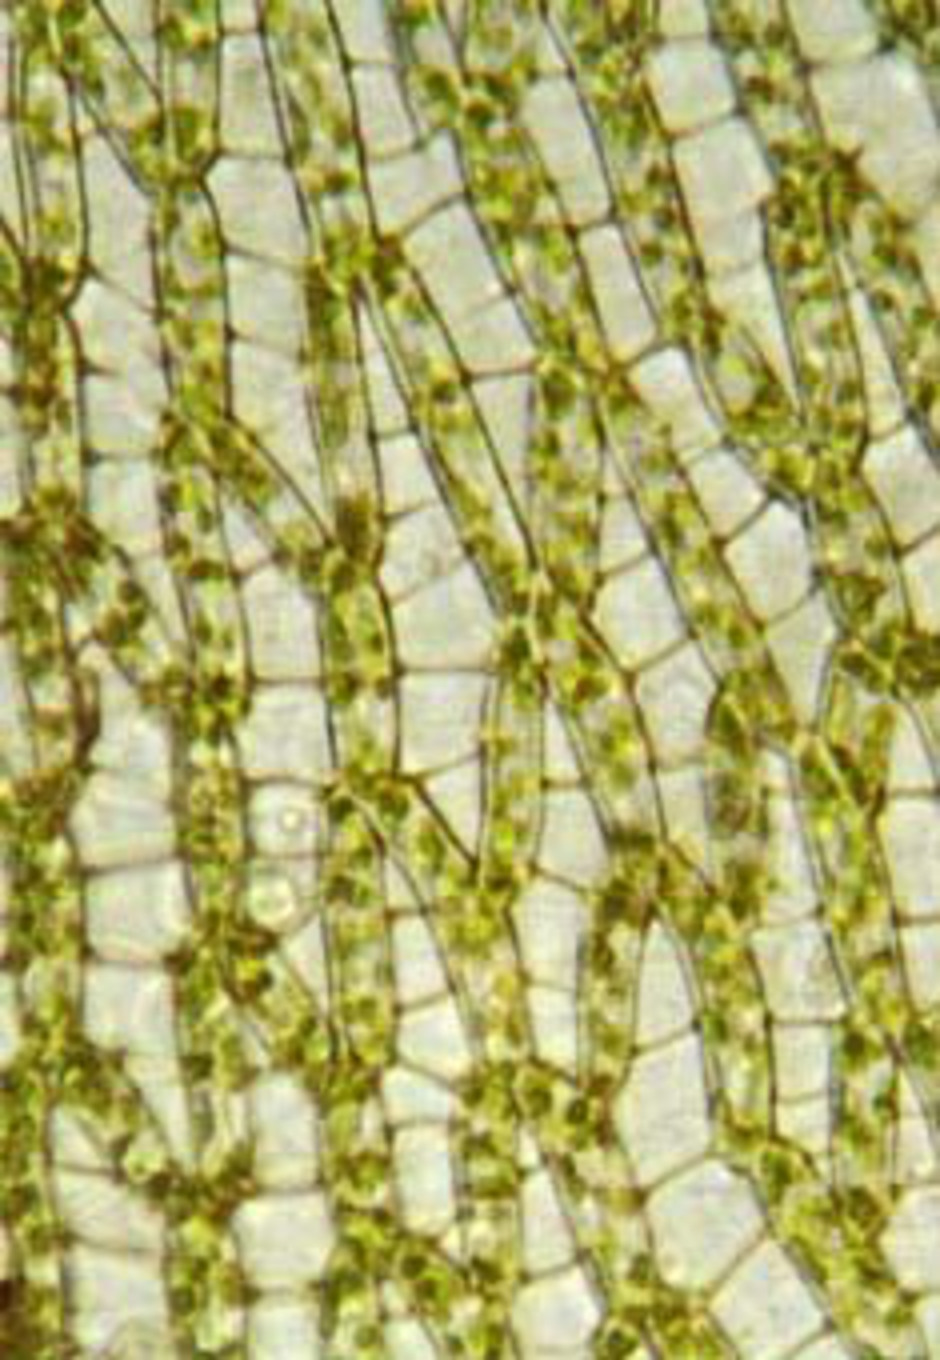 Grenbladsceller hos granvitmossa (Sphagnum girgensohnii). Den vänstra bilden är tagen från bladets konvexsida (d.v.s. utsidan), medan den högra tagits från konkavsidan. Man ser tydligt att de gröna cellerna är bredare på konkavsidan än på konvexsidan, ett kännemärke för den grupp vitmossor där granvitmossan hör hemma. Notera även hyalincellernas tvärgående fibriller och porerna som syns tydligt på konvexsidan. Foto: L. Hedenäs.